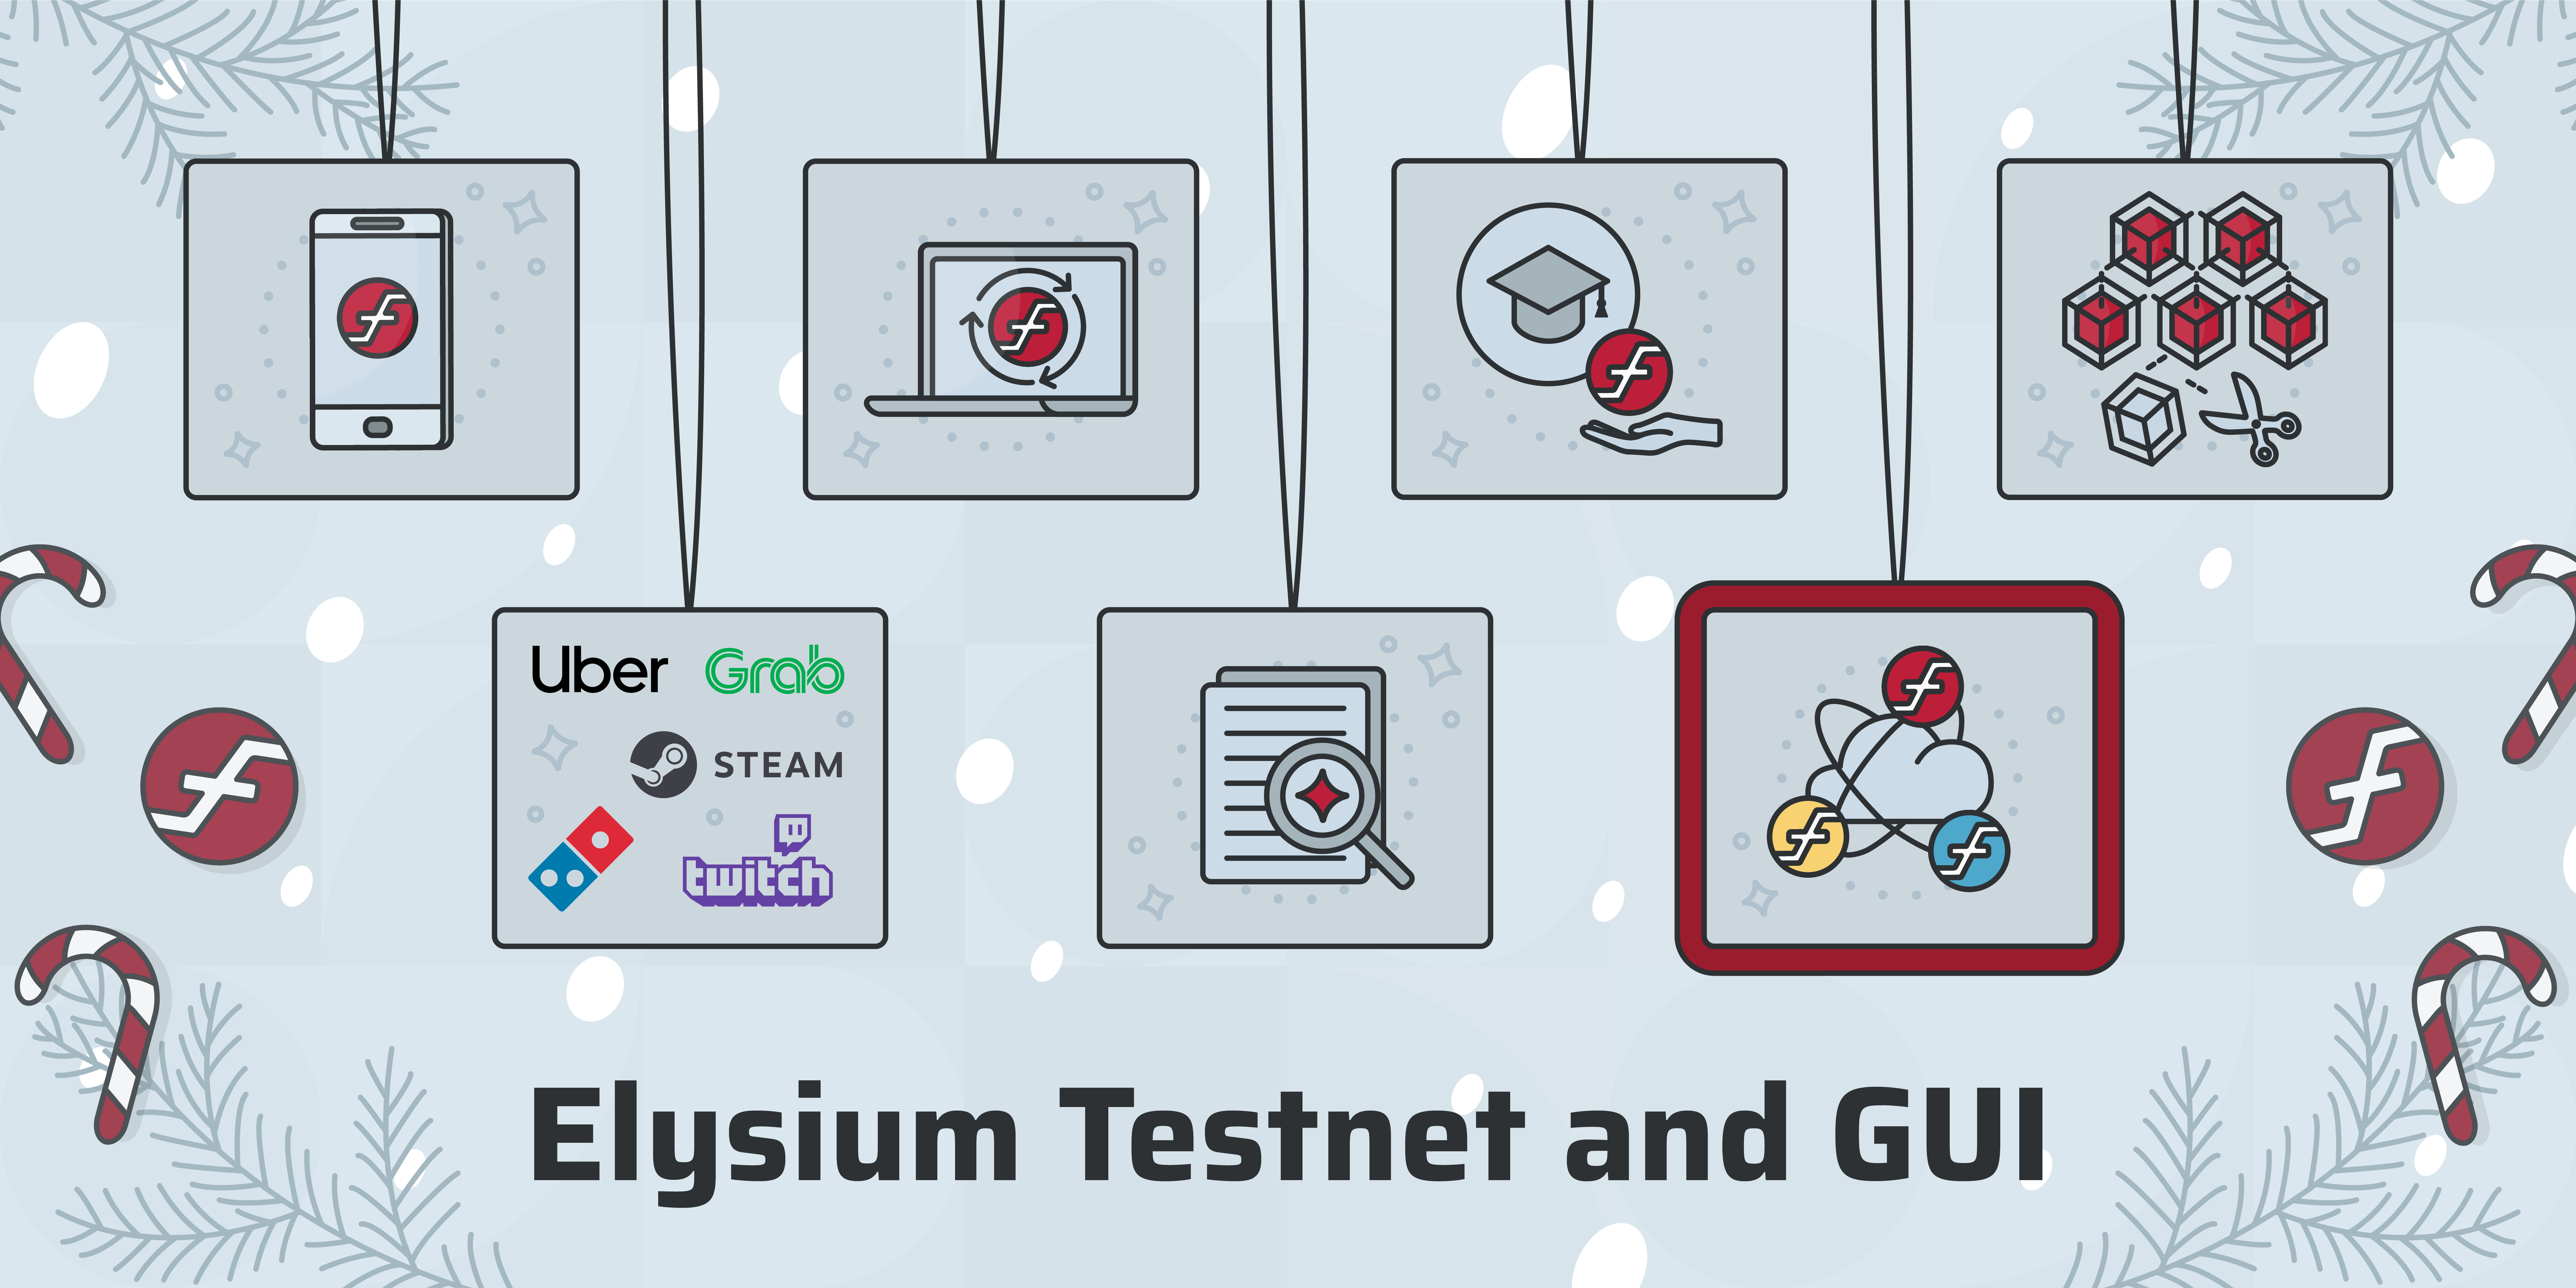 Elysium 测试网以及图形用户界面